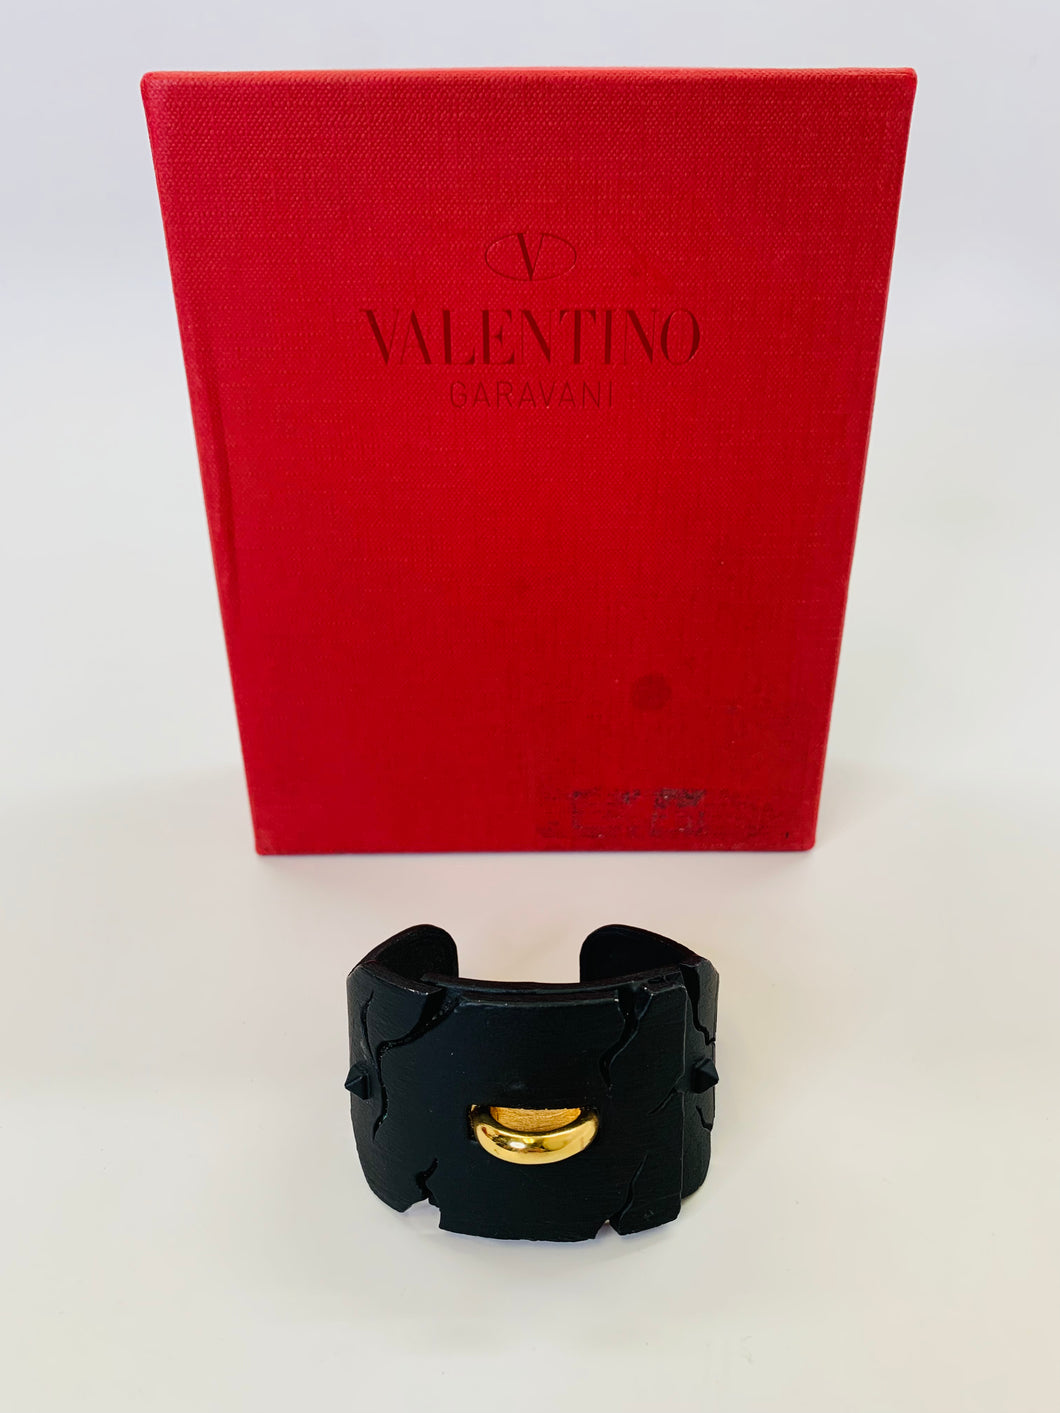 Valentino Garavani Black and Gold Cuff Size Small